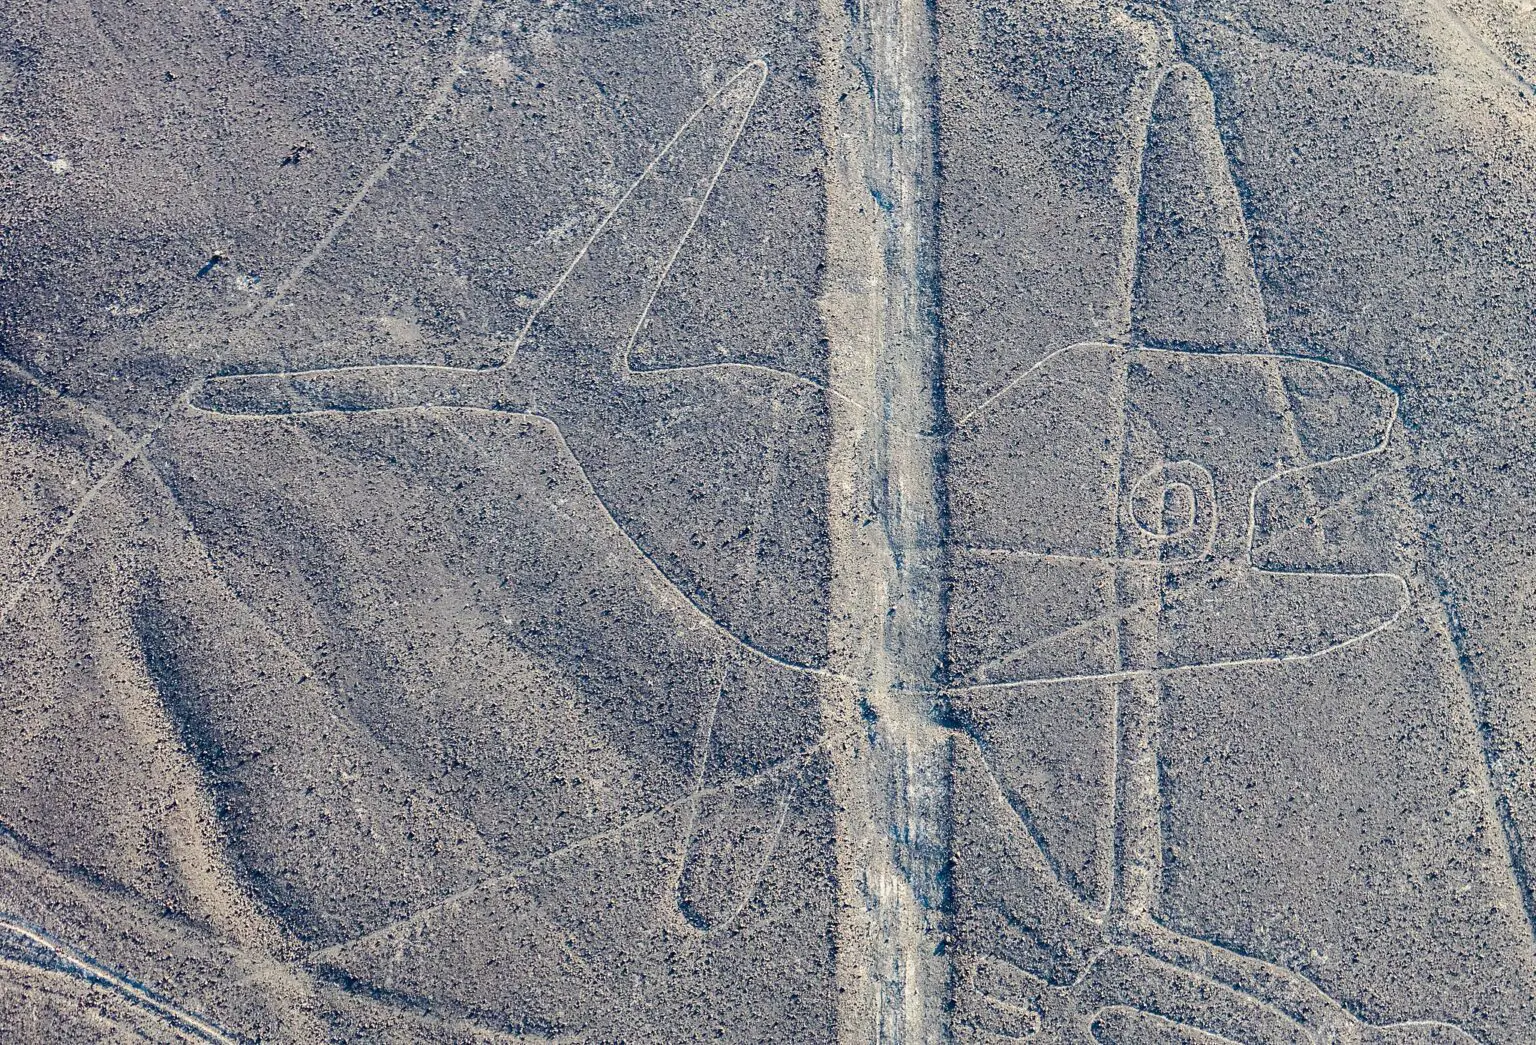 Las Líneas de Nazca: Los misteriosos dibujos realizados en el desierto peruano hace 1.700 años